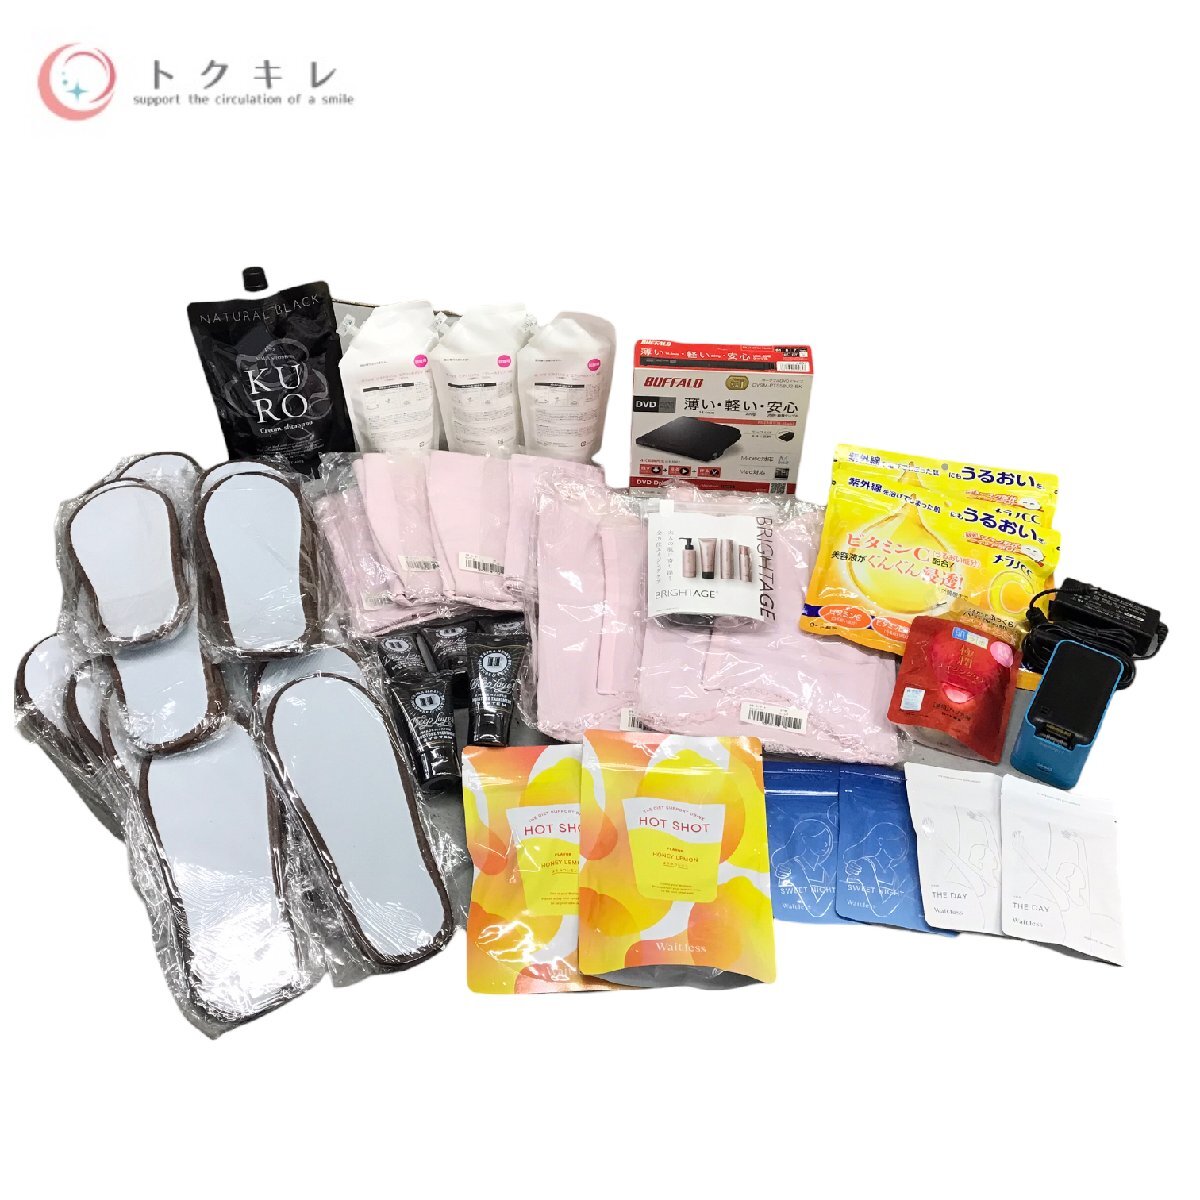 !1 иен старт бесплатная доставка cosme supplement .. много 48 позиций комплект яркий eijiti- плеер аспидистра rose o- geo low tomelanoCC CASIO